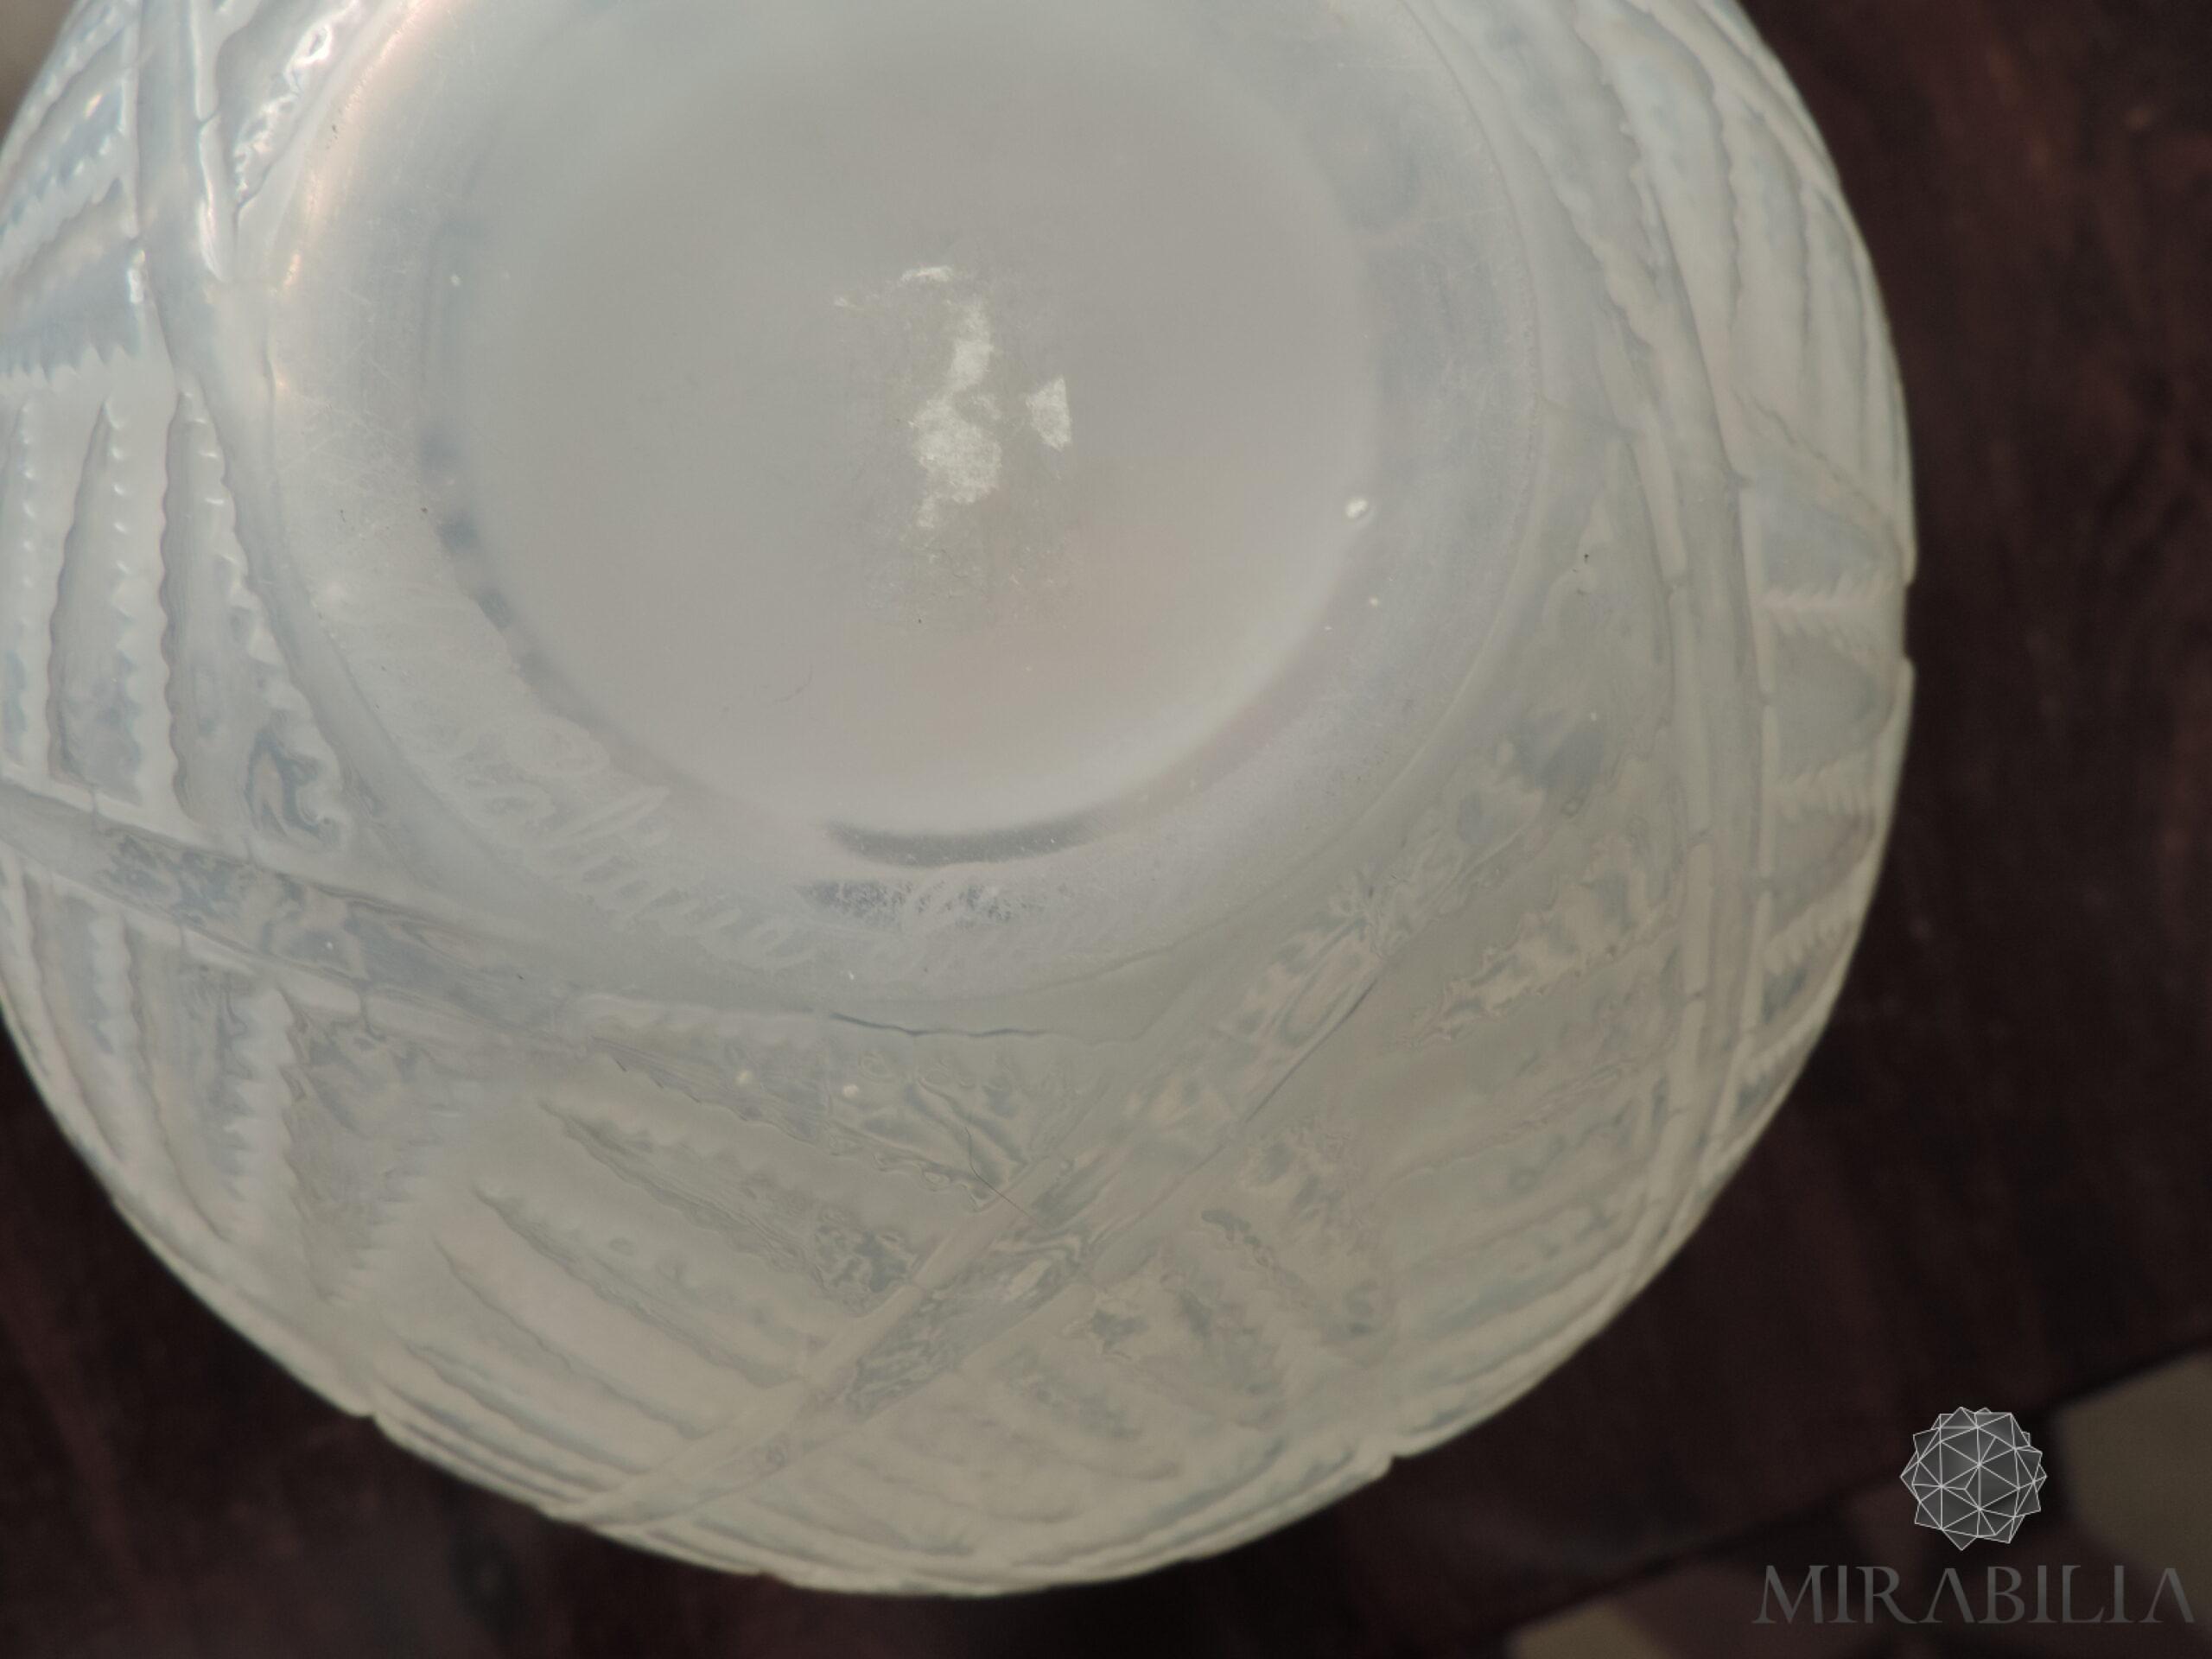 Vaso a forma sferica “Espalion”, dettaglio fondo